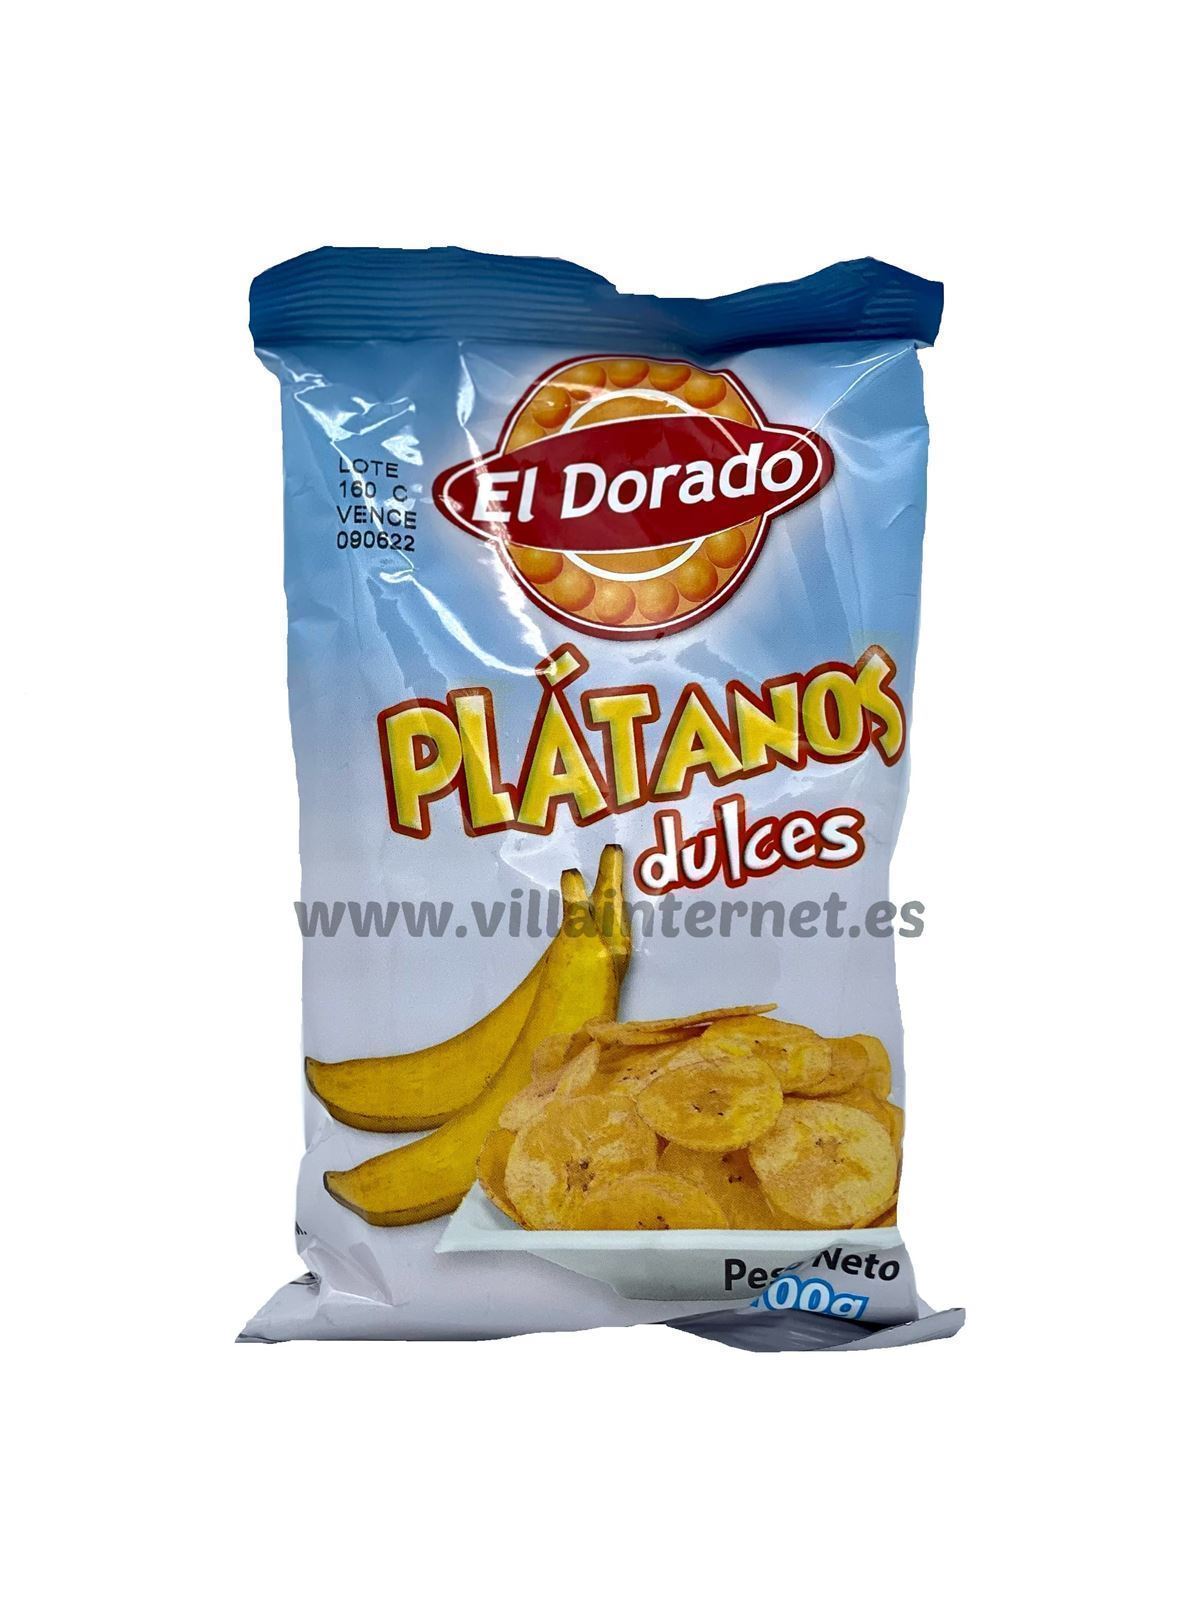 Plátanos fritos dulces 100g - Imagen 1